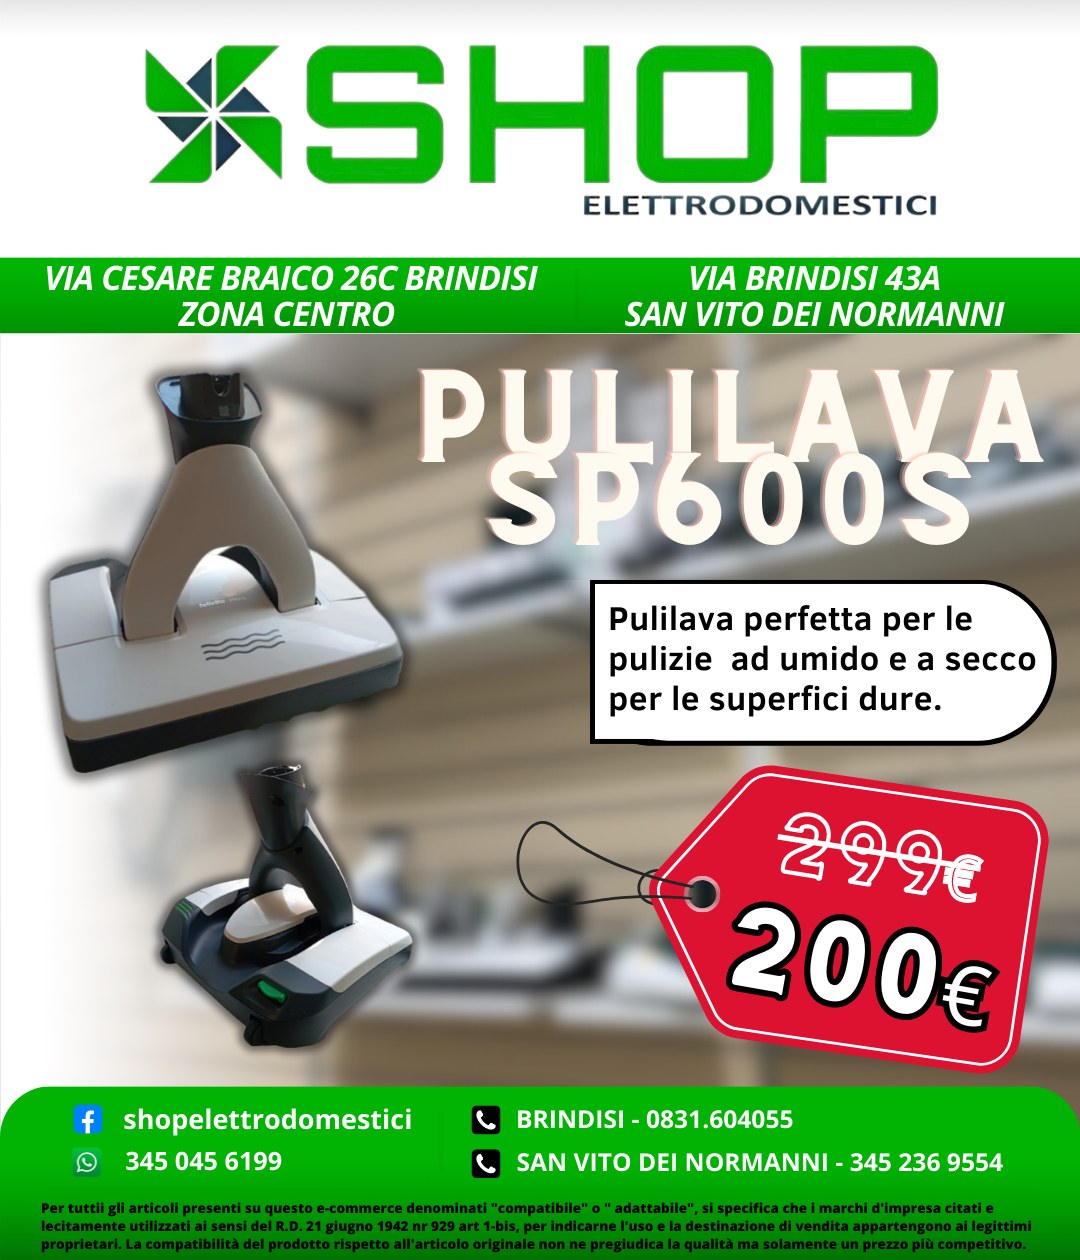 SHOP Elettrodomestici - Pulilava SP600s